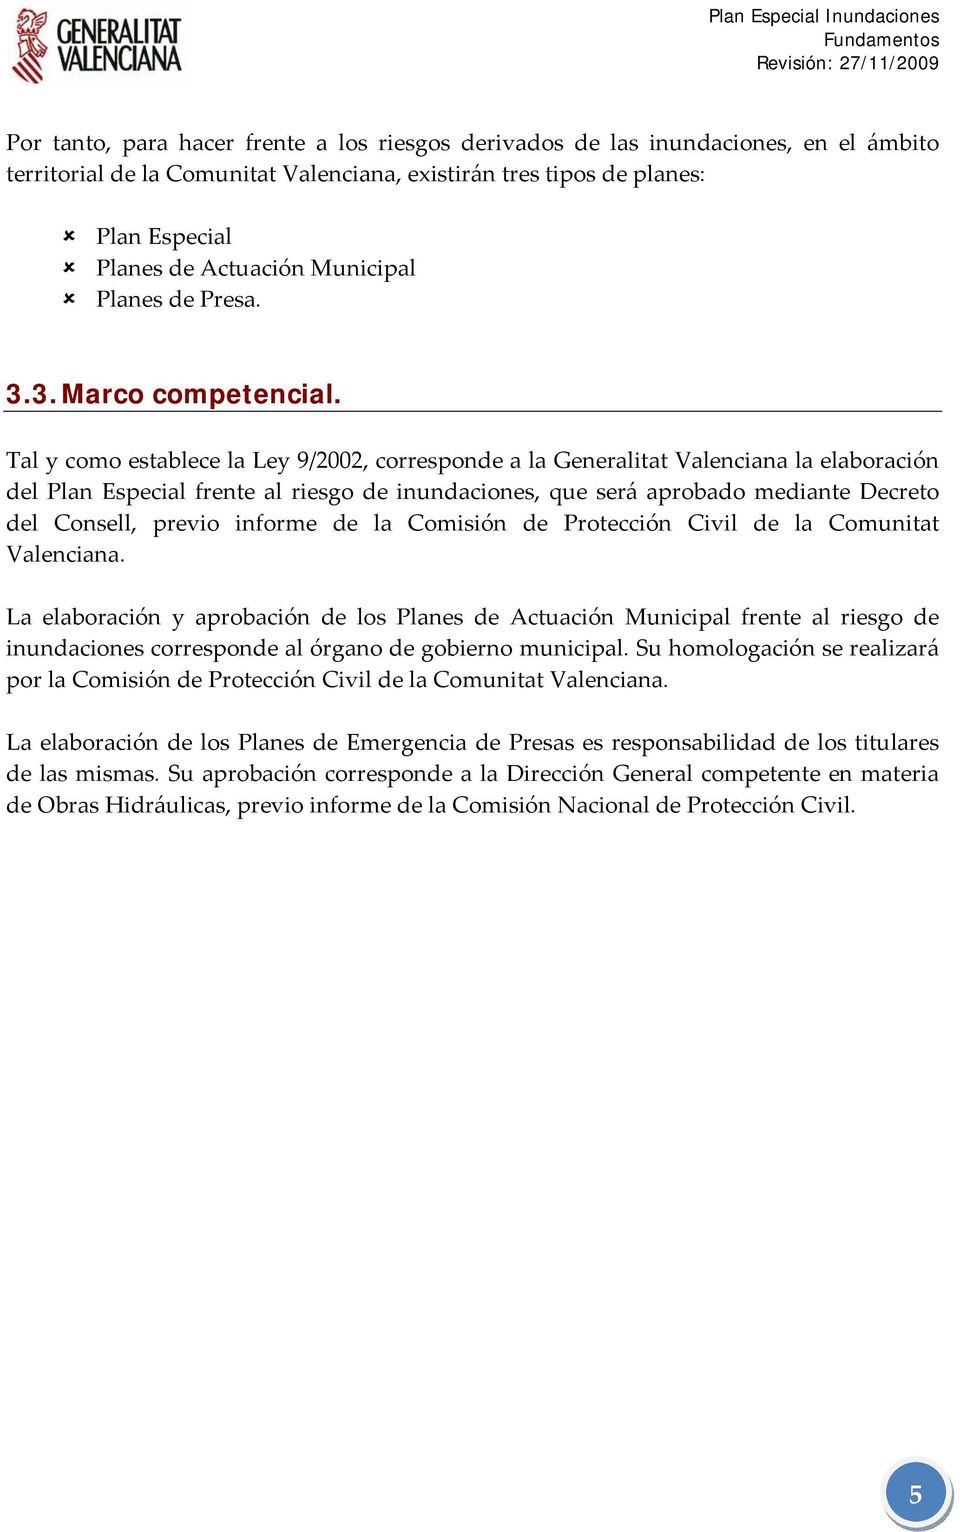 Tal y como establece la Ley 9/2002, corresponde a la Generalitat Valenciana la elaboración del Plan Especial frente al riesgo de inundaciones, que será aprobado mediante Decreto del Consell, previo